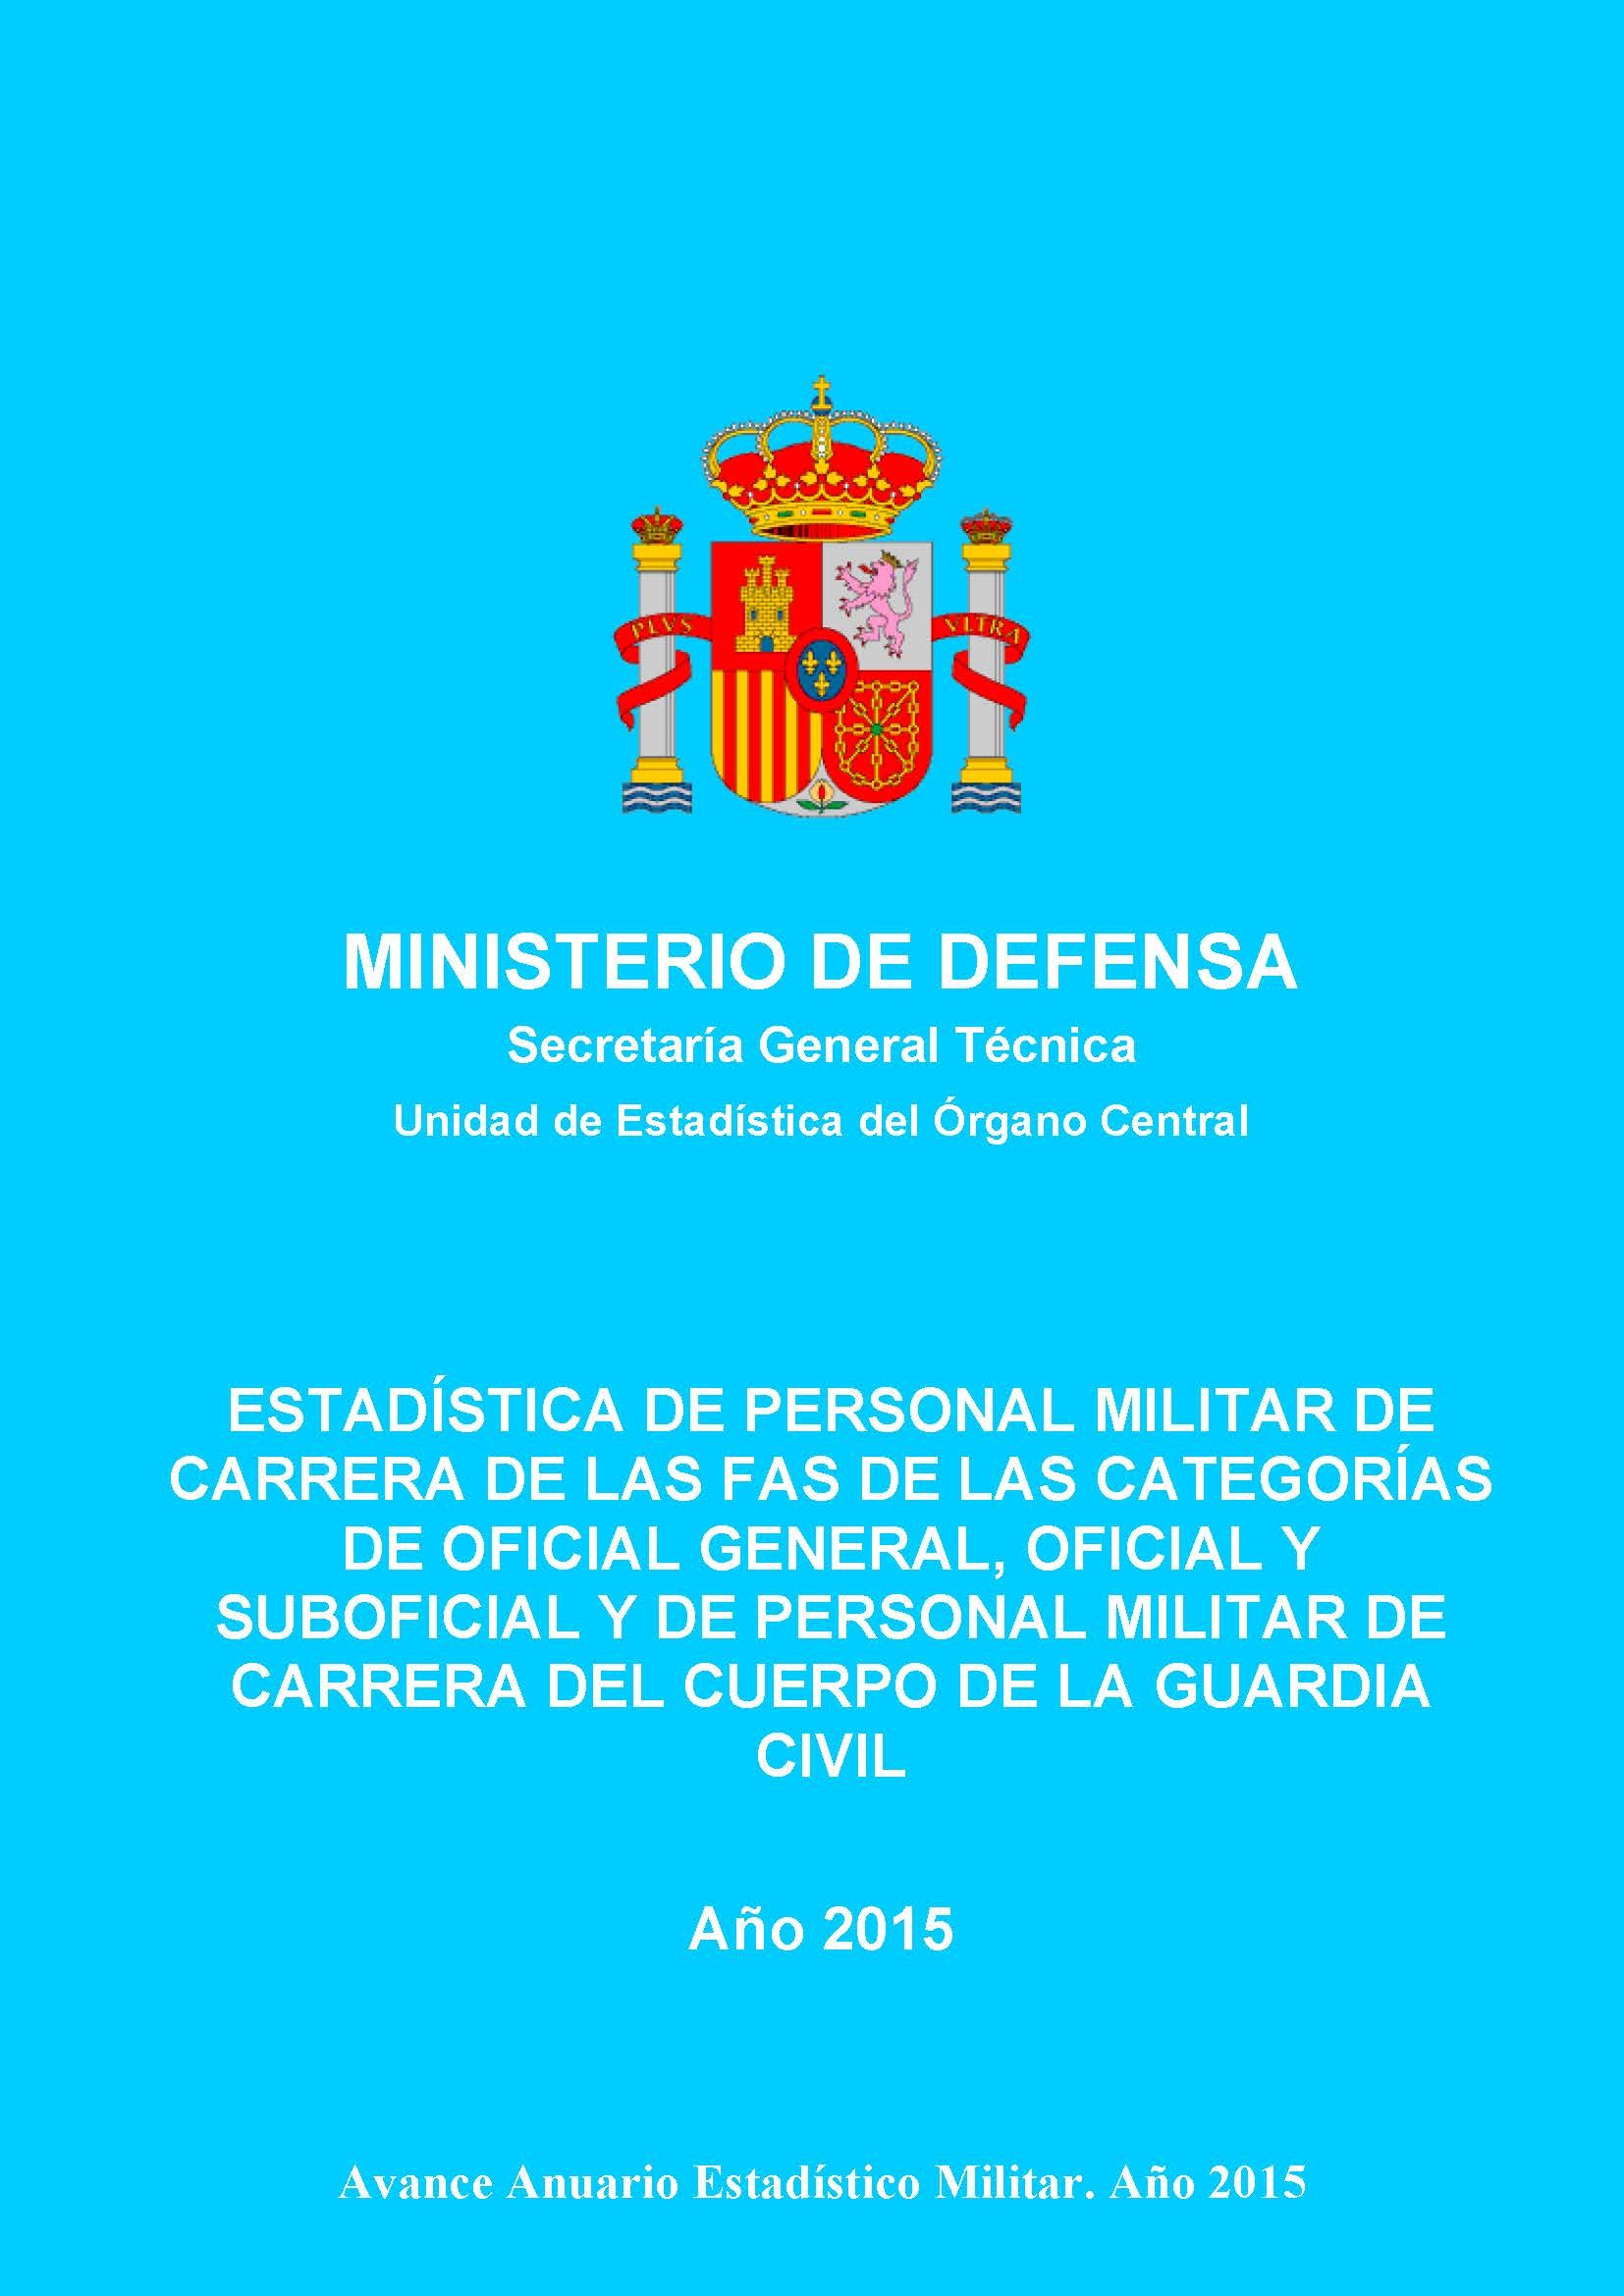 ESTADÍSTICA DE PERSONAL MILITAR DE CARRERA DE LAS FAS DE LAS CATEGORÍAS DE OFICIAL GENERAL, OFICIAL Y SUBOFICIAL Y DE PERSONAL MILITAR DE CARRERA DEL CUERPO DE LA GUARDIA CIVIL 2015